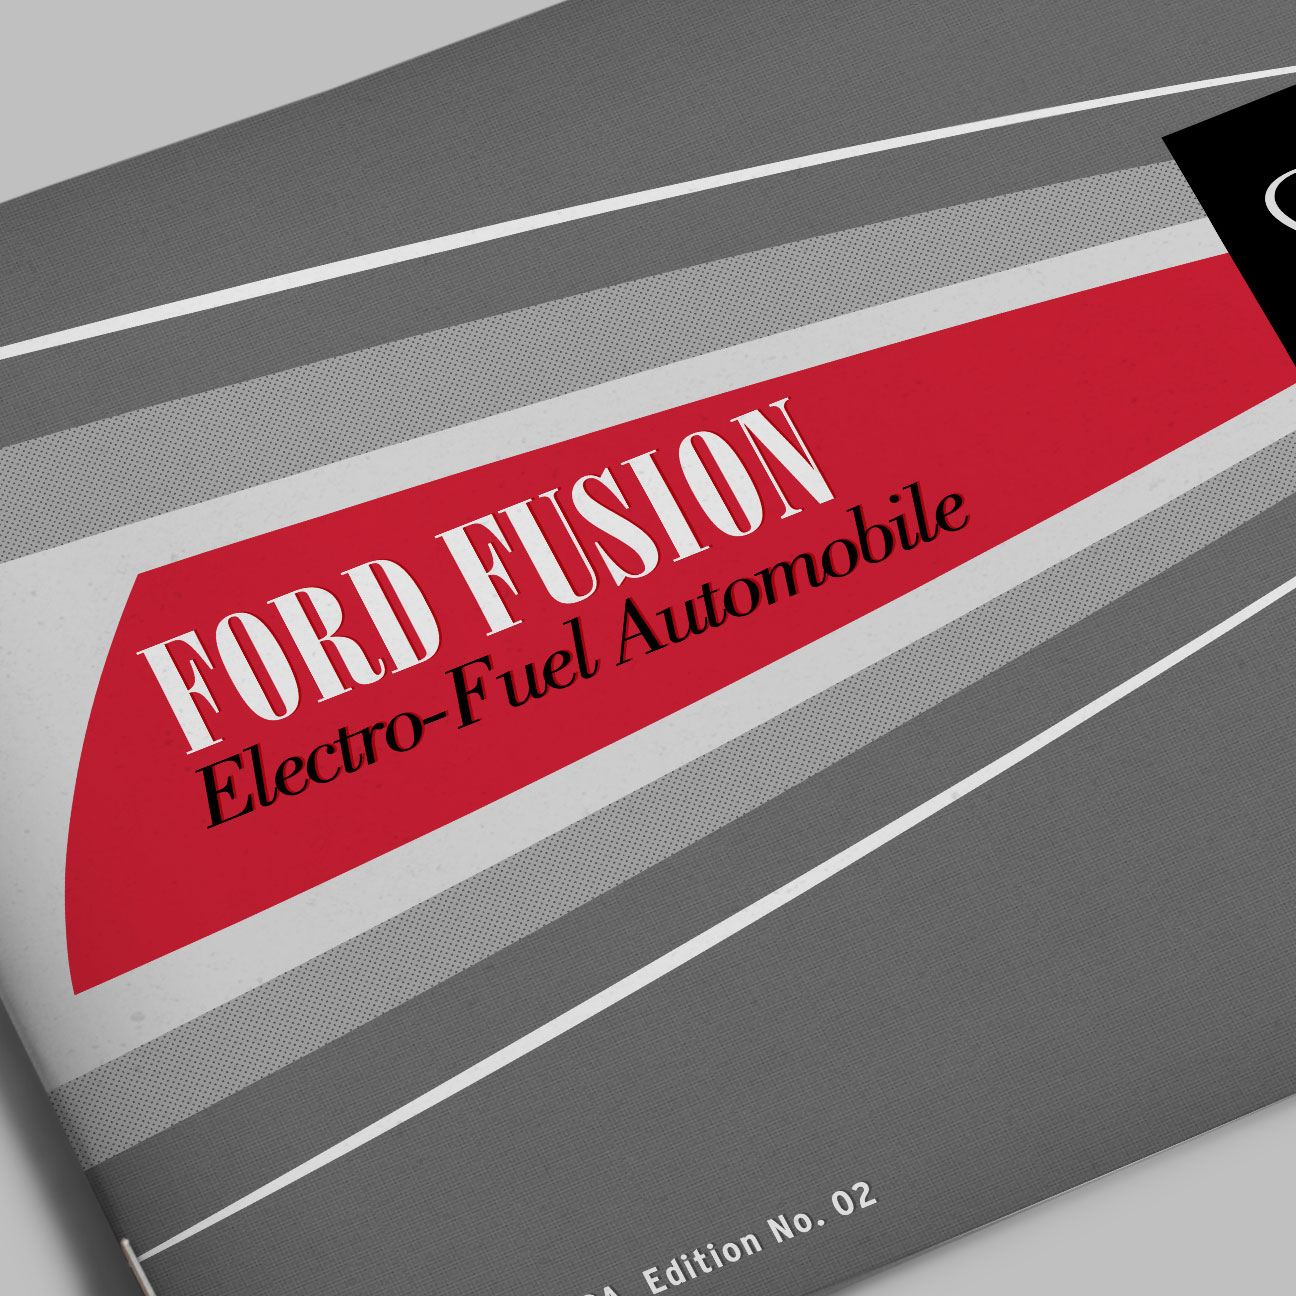 Designerham - Portfolio of Michael Ham - Auto Atomica - Ford Fusion Close Up